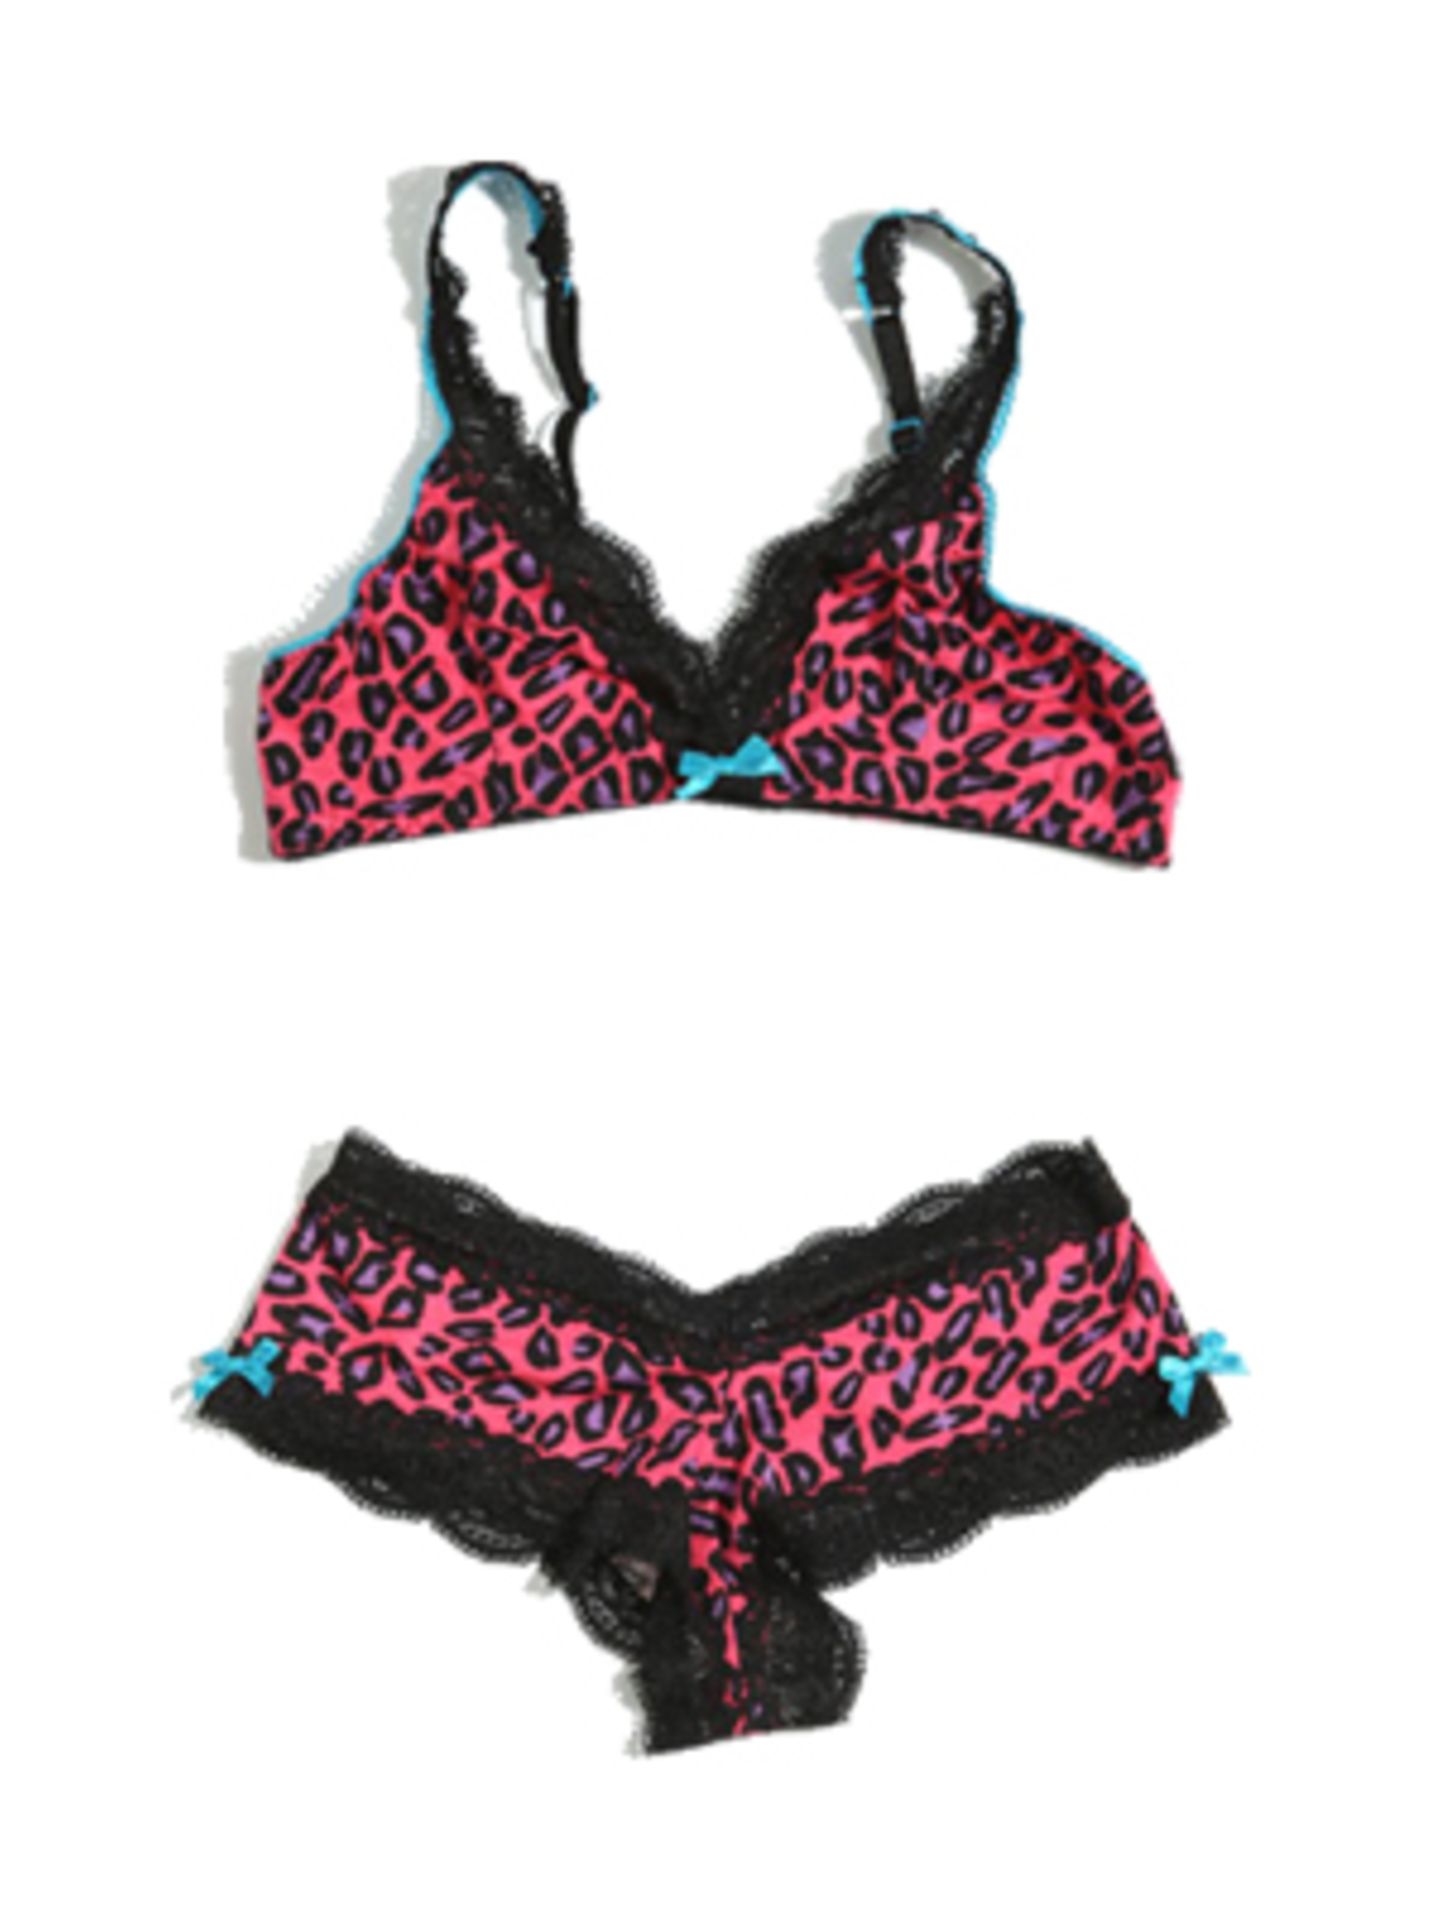 Triangel-BH und Panty im pinkfarbenen Animal-Print mit schwarzer Spitze von Urban Outfitters. BH um 18 Euro, Slip um 12 Euro.